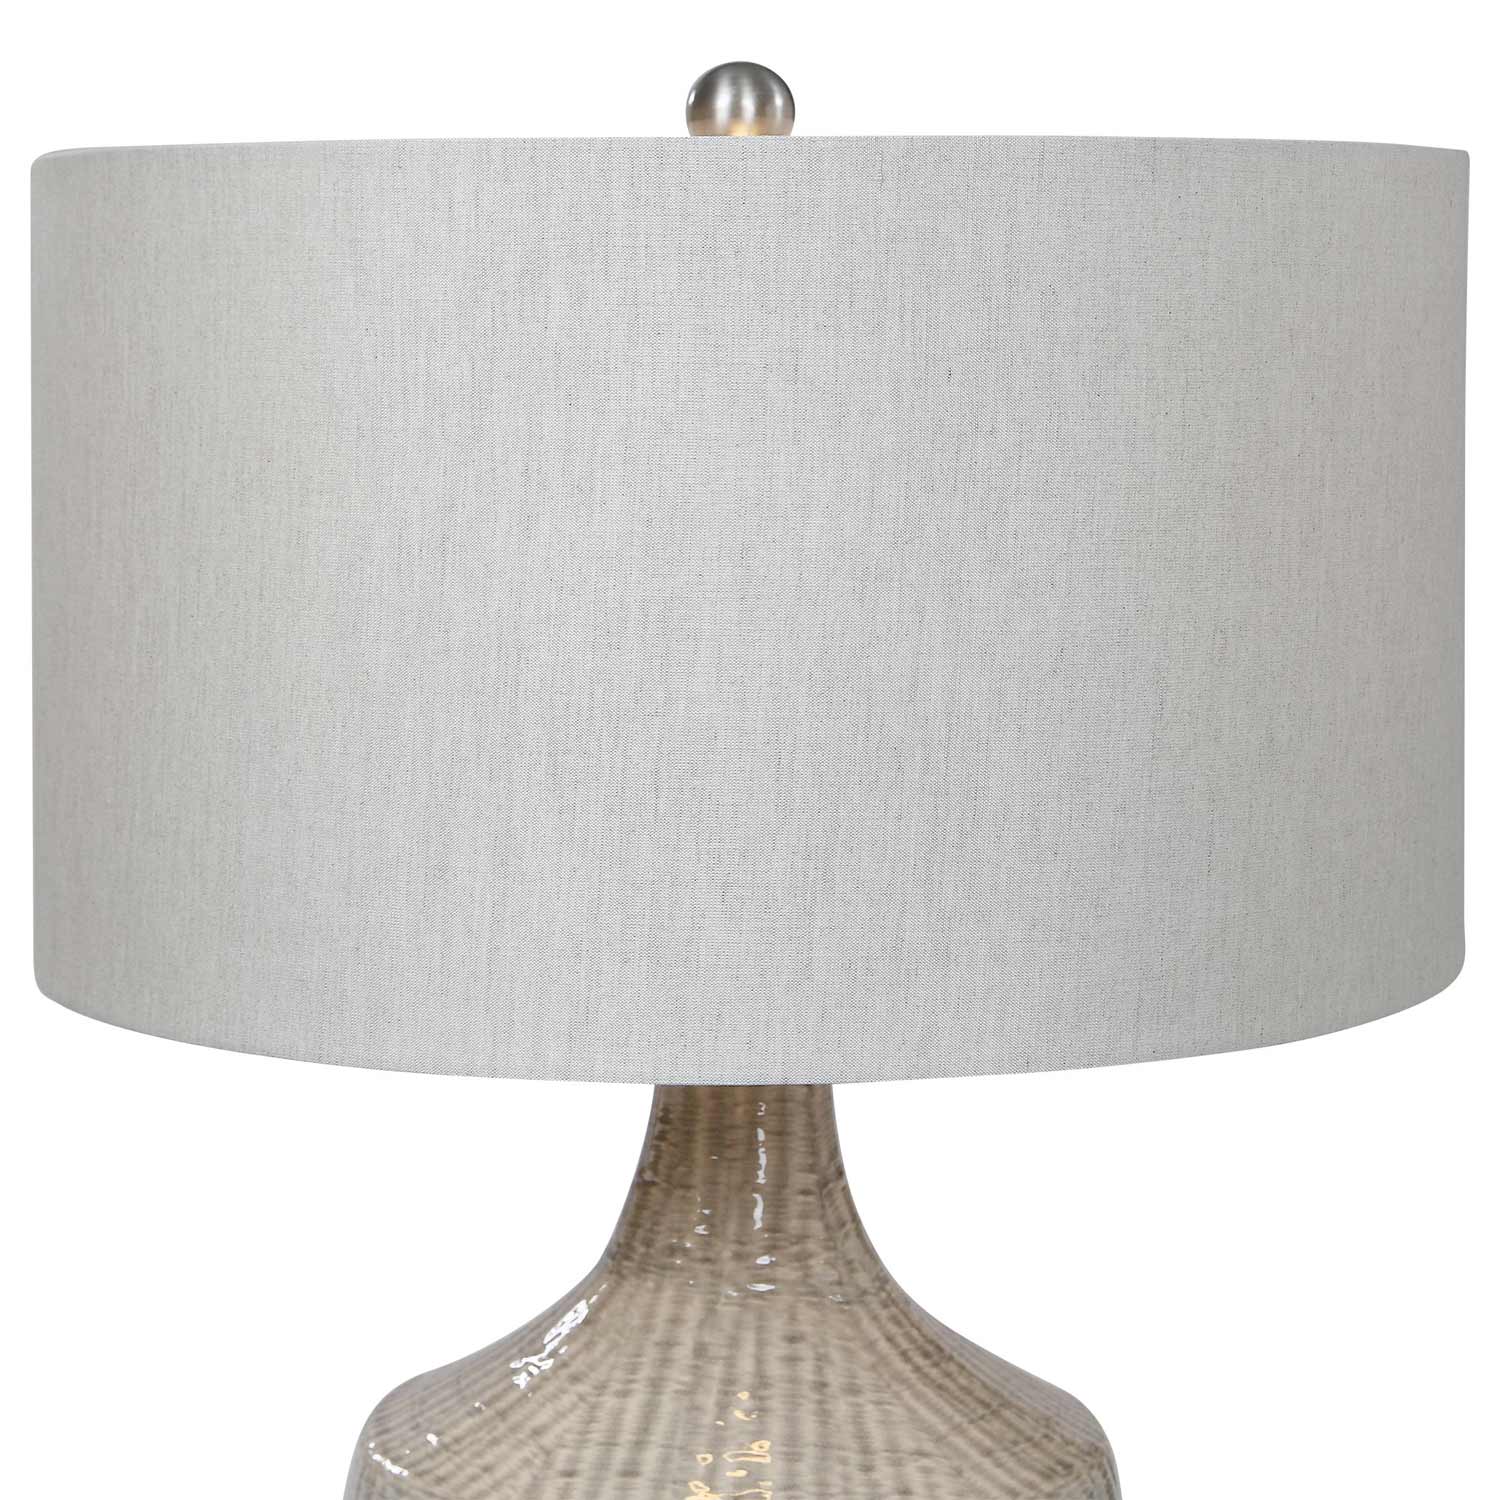 Uttermost Felipe Table Lamp - Gray